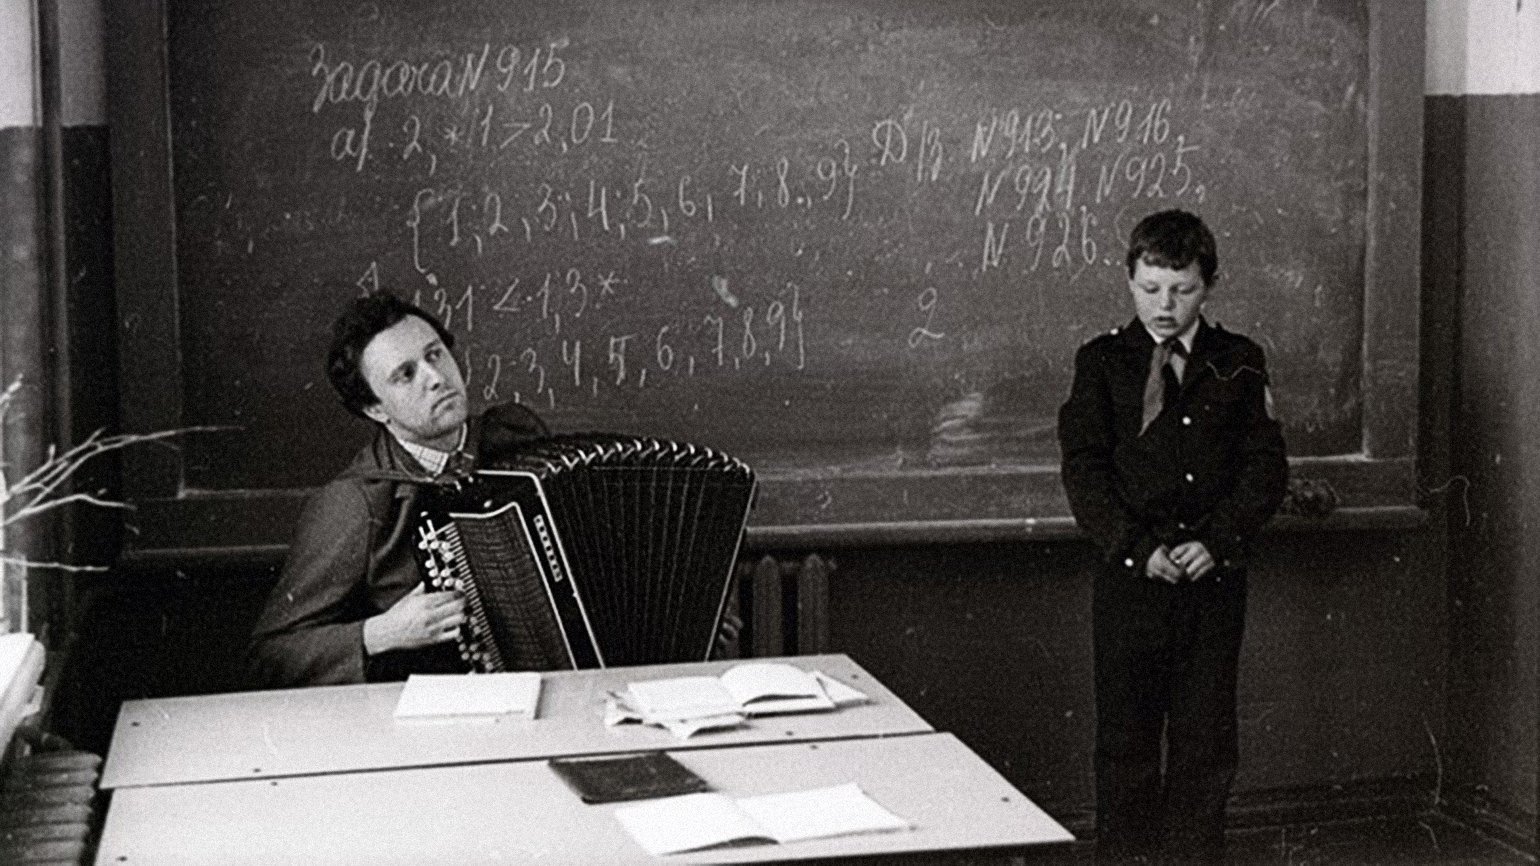 Физика советской школы